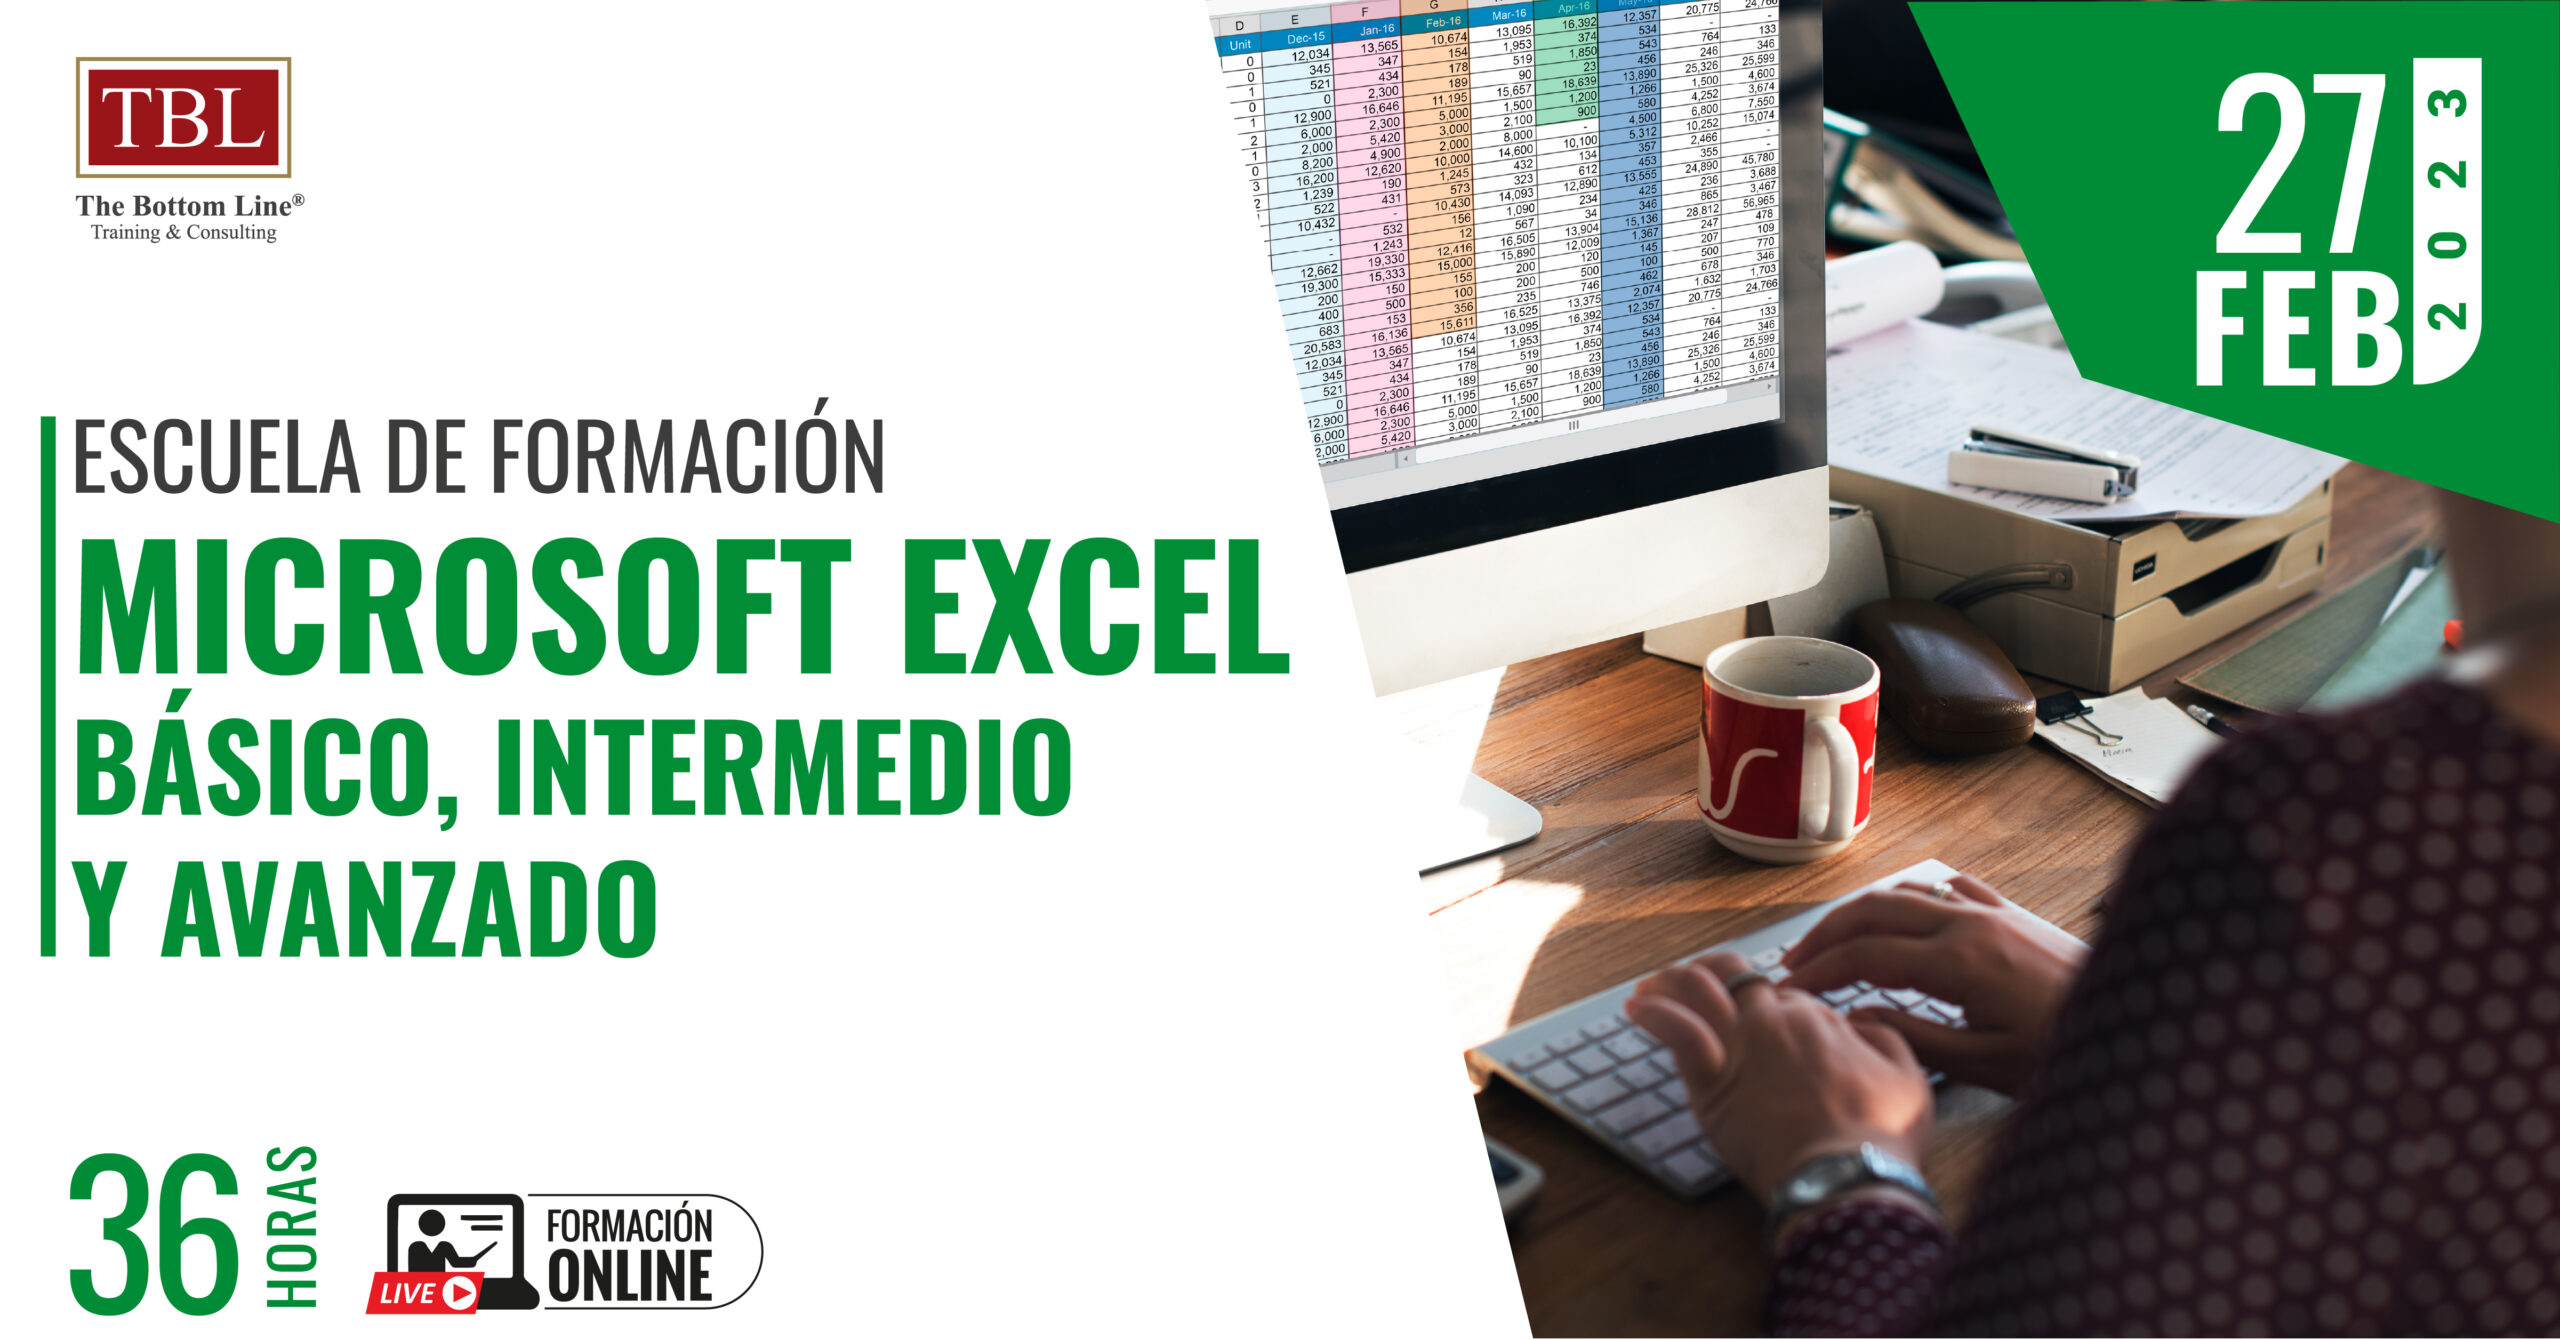 Microsoft Excel: Básico, Intermedio y Avanzado